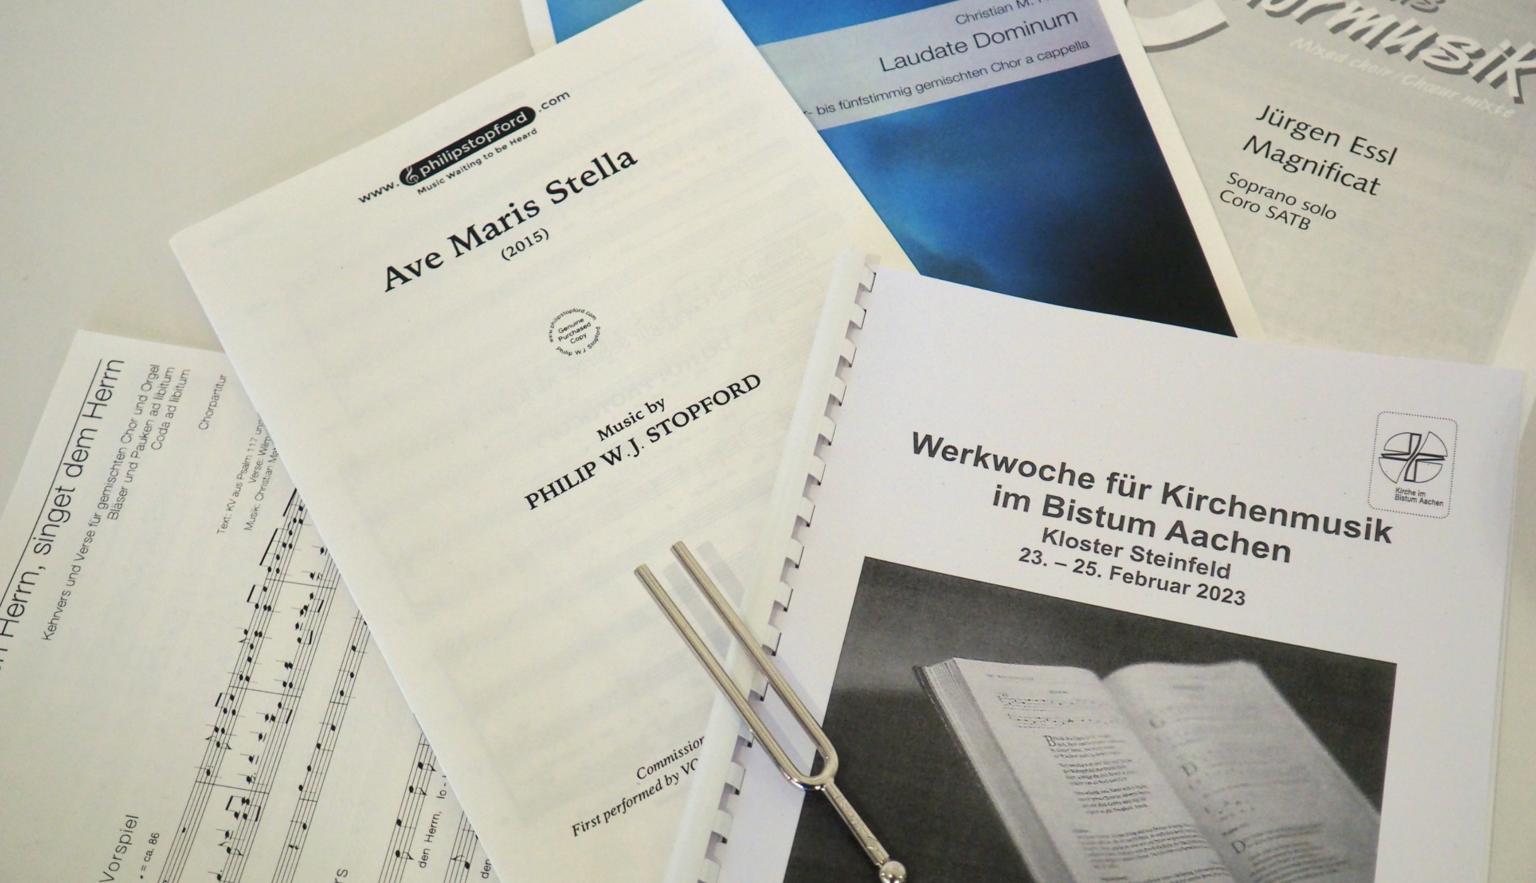 Werkwoche für Kirchenmusik im Bistum Aachen 2023 (c) Andreas Hoffmann